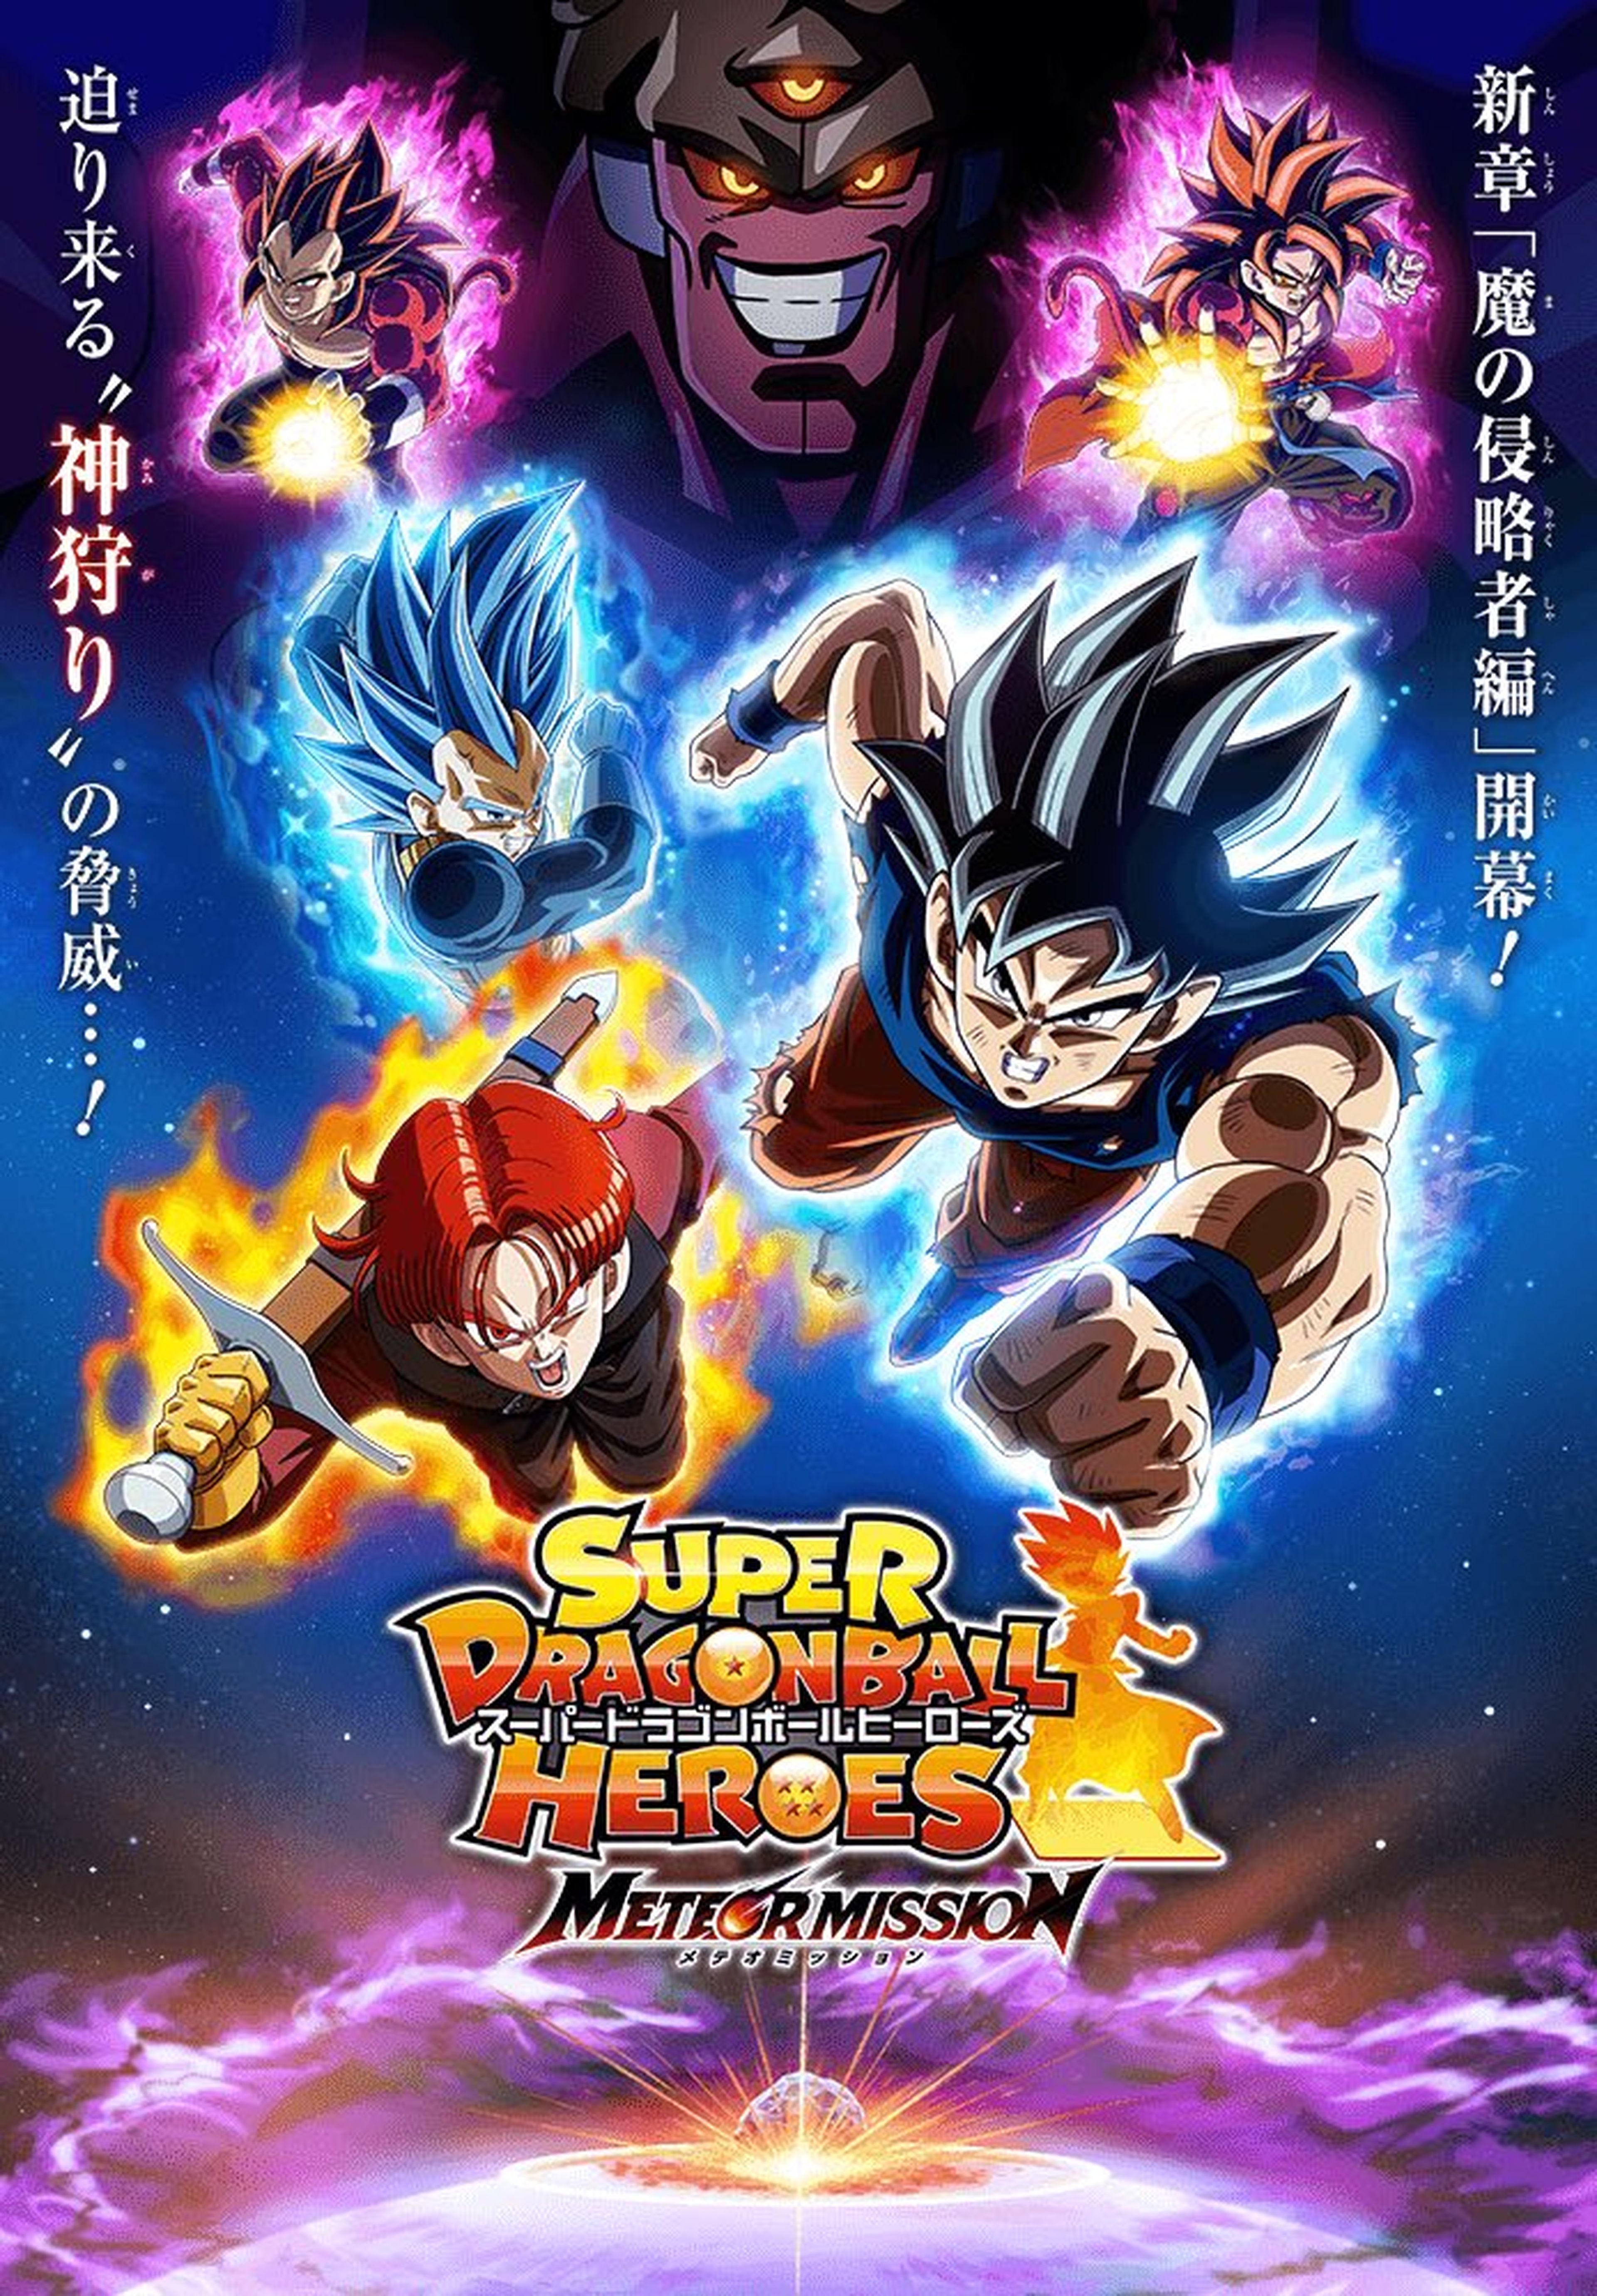 Super Dragon Ball Heroes ahora se ve horrible - Se han cargado la serie anime de Goku que cada día veía más gente 